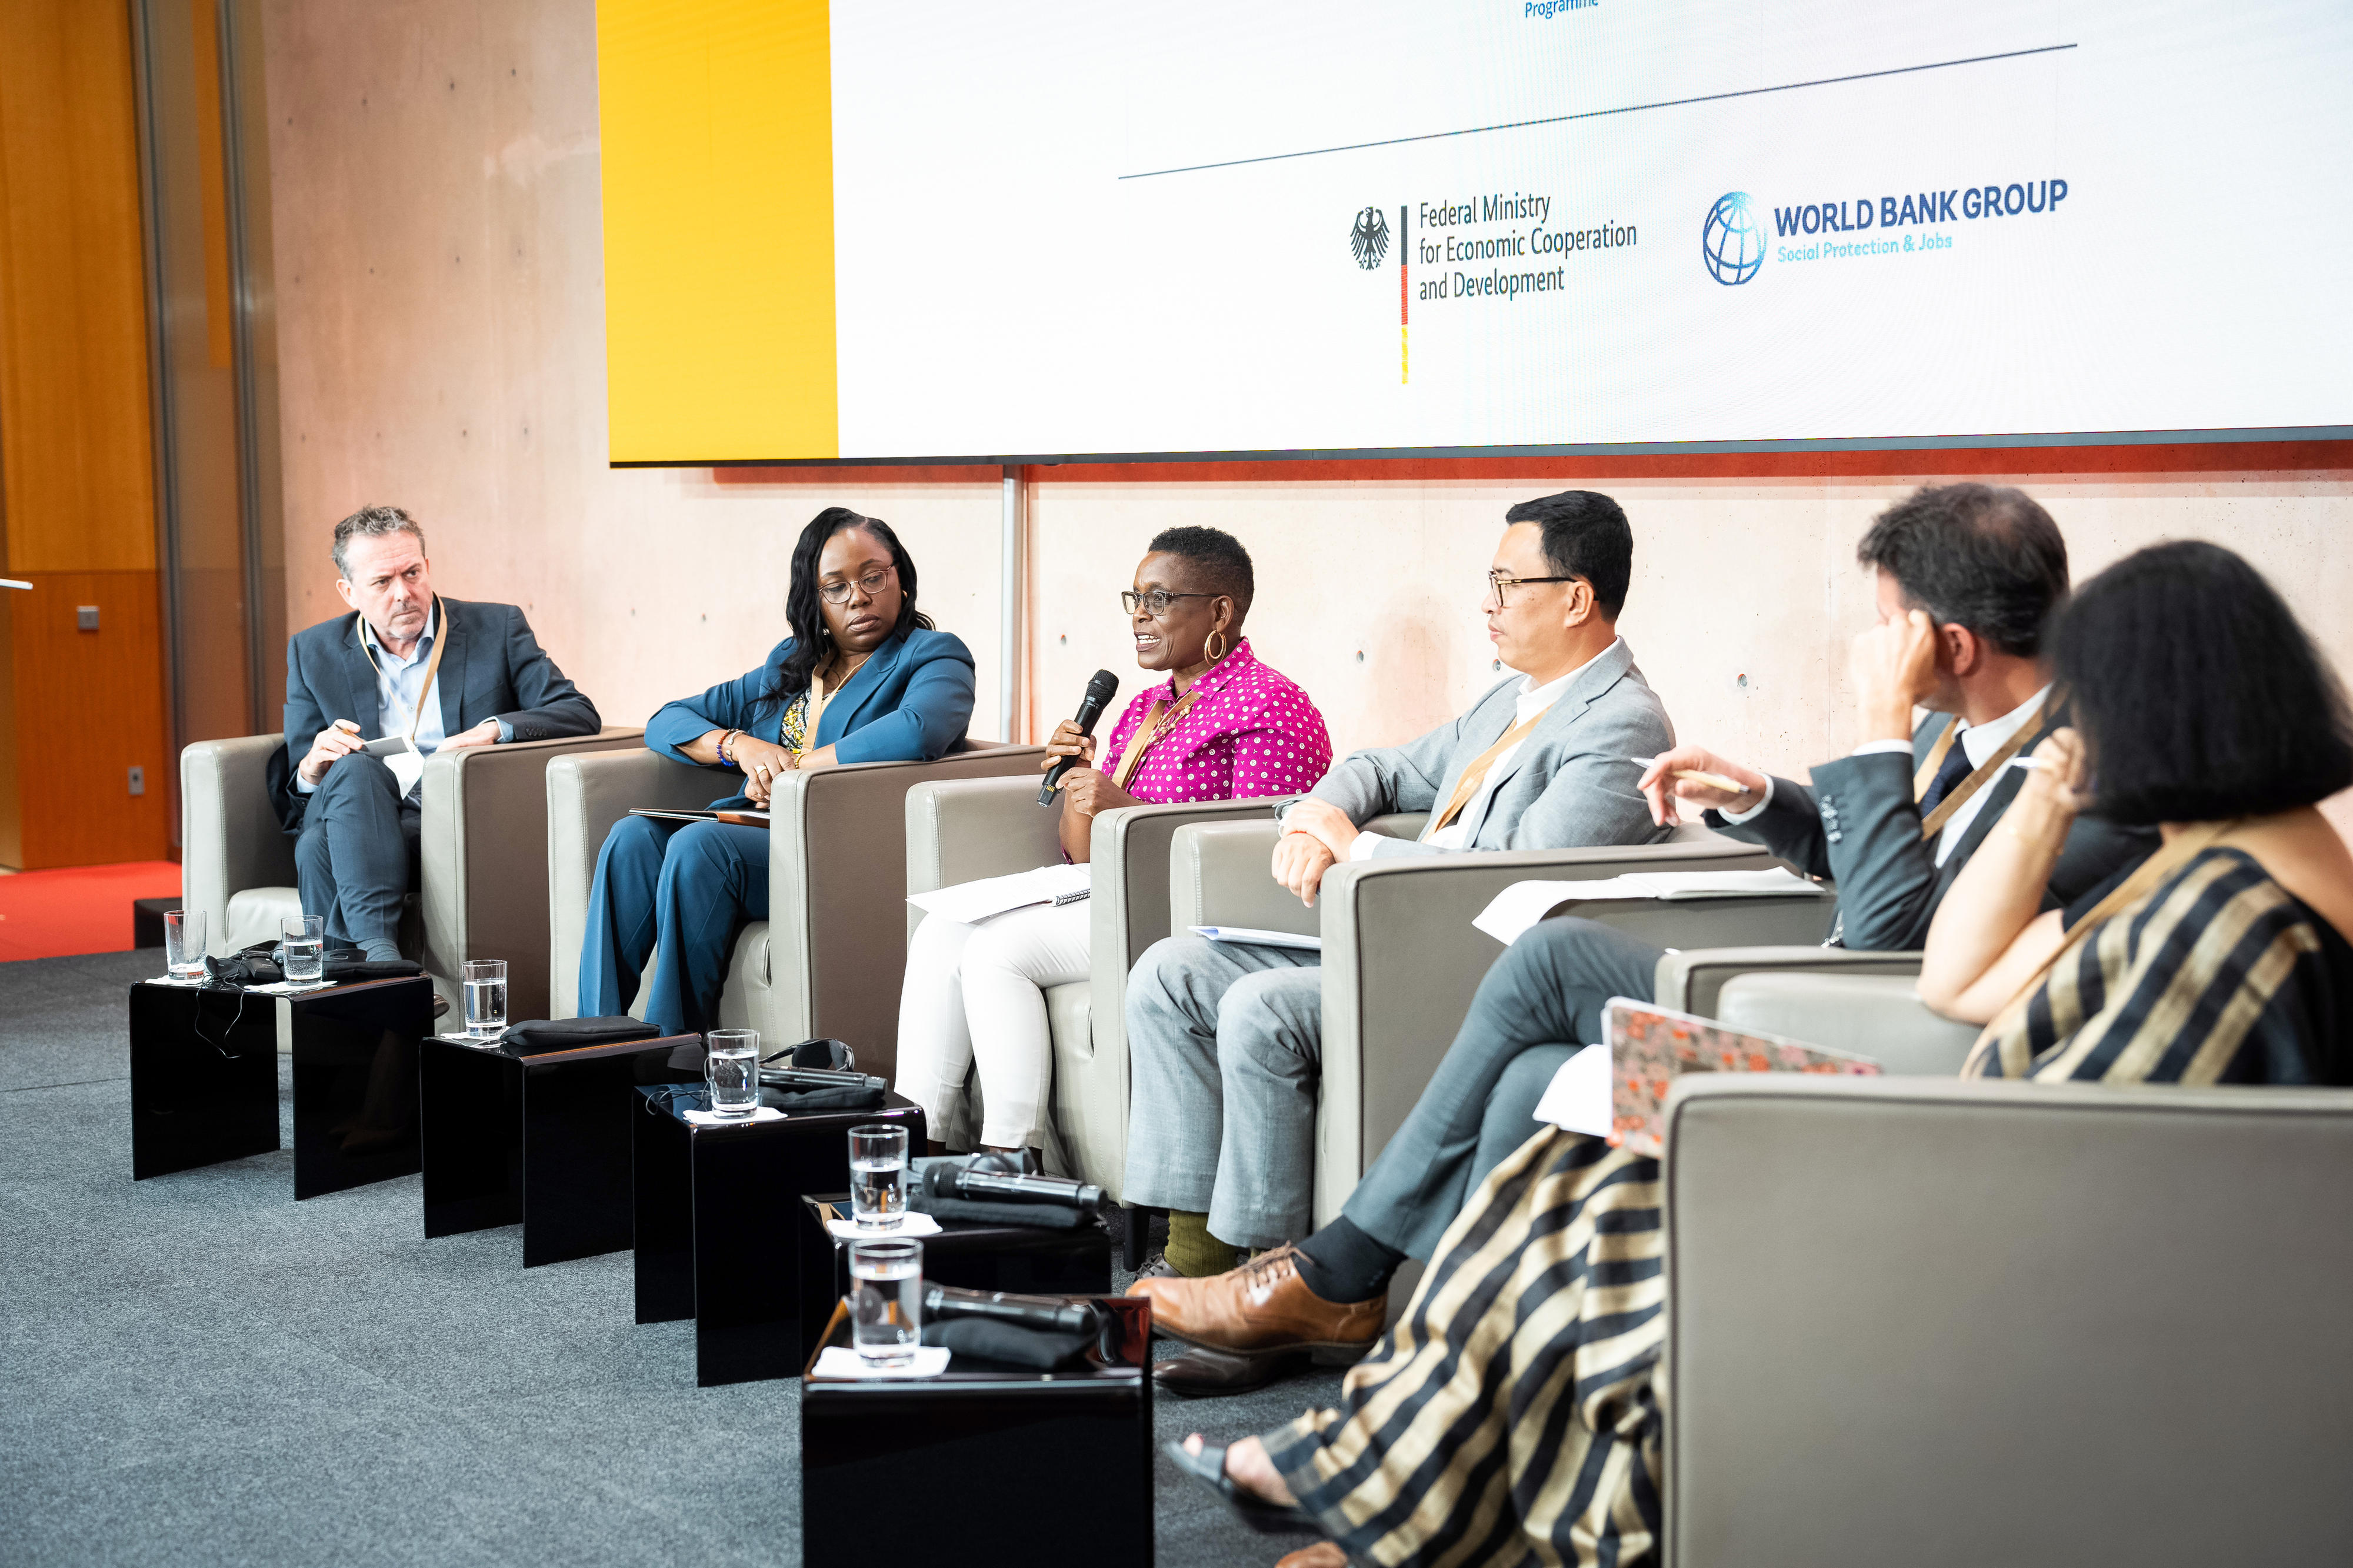 Teilnehmerinnen und Teilnehmer der Konferenz "Globales Forum zu sozialer Sicherung" in Berlin